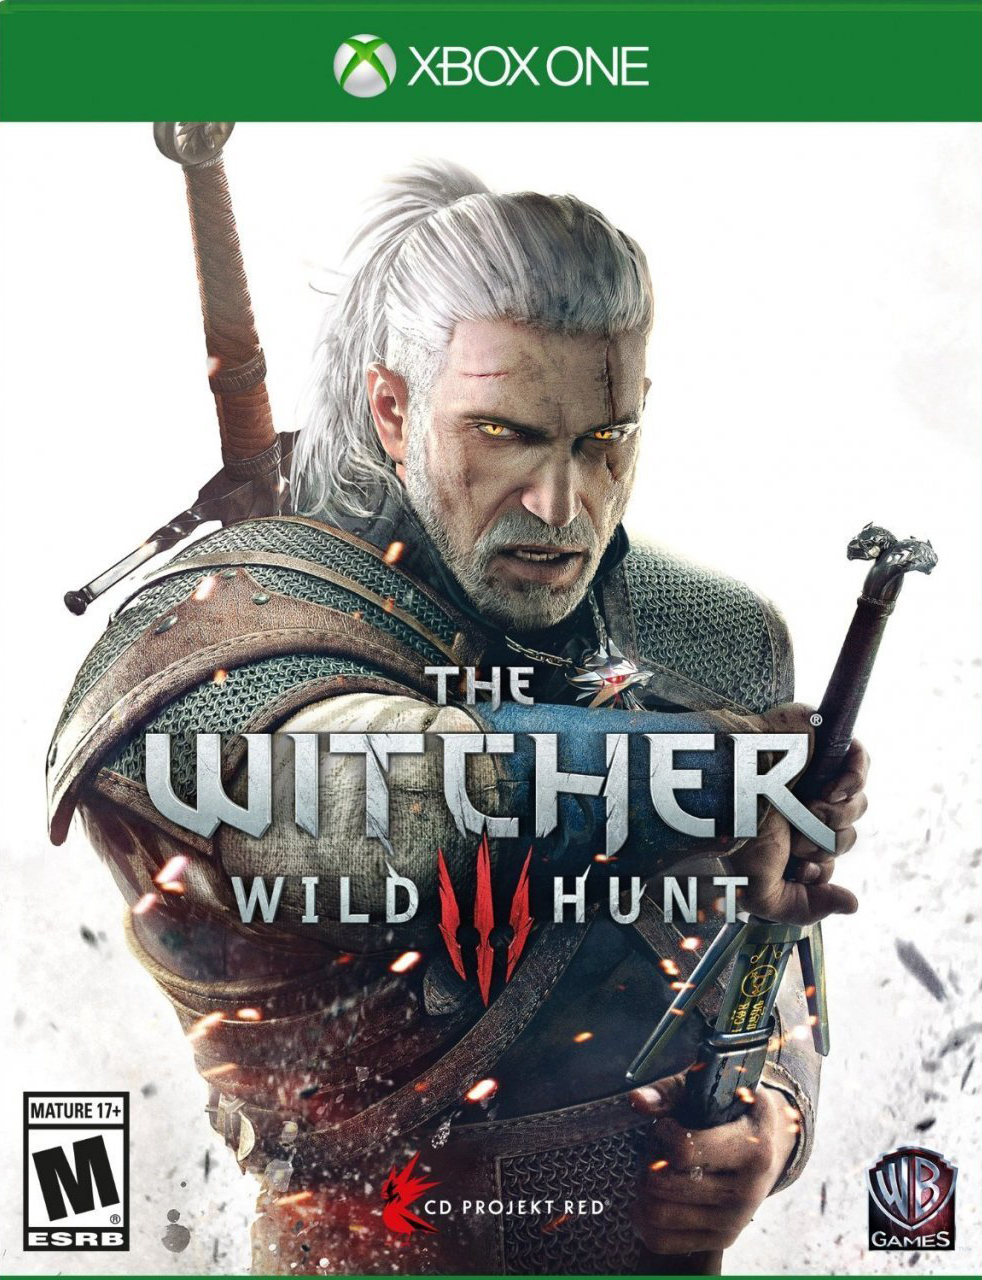 Witcher 3: Wild Hunt